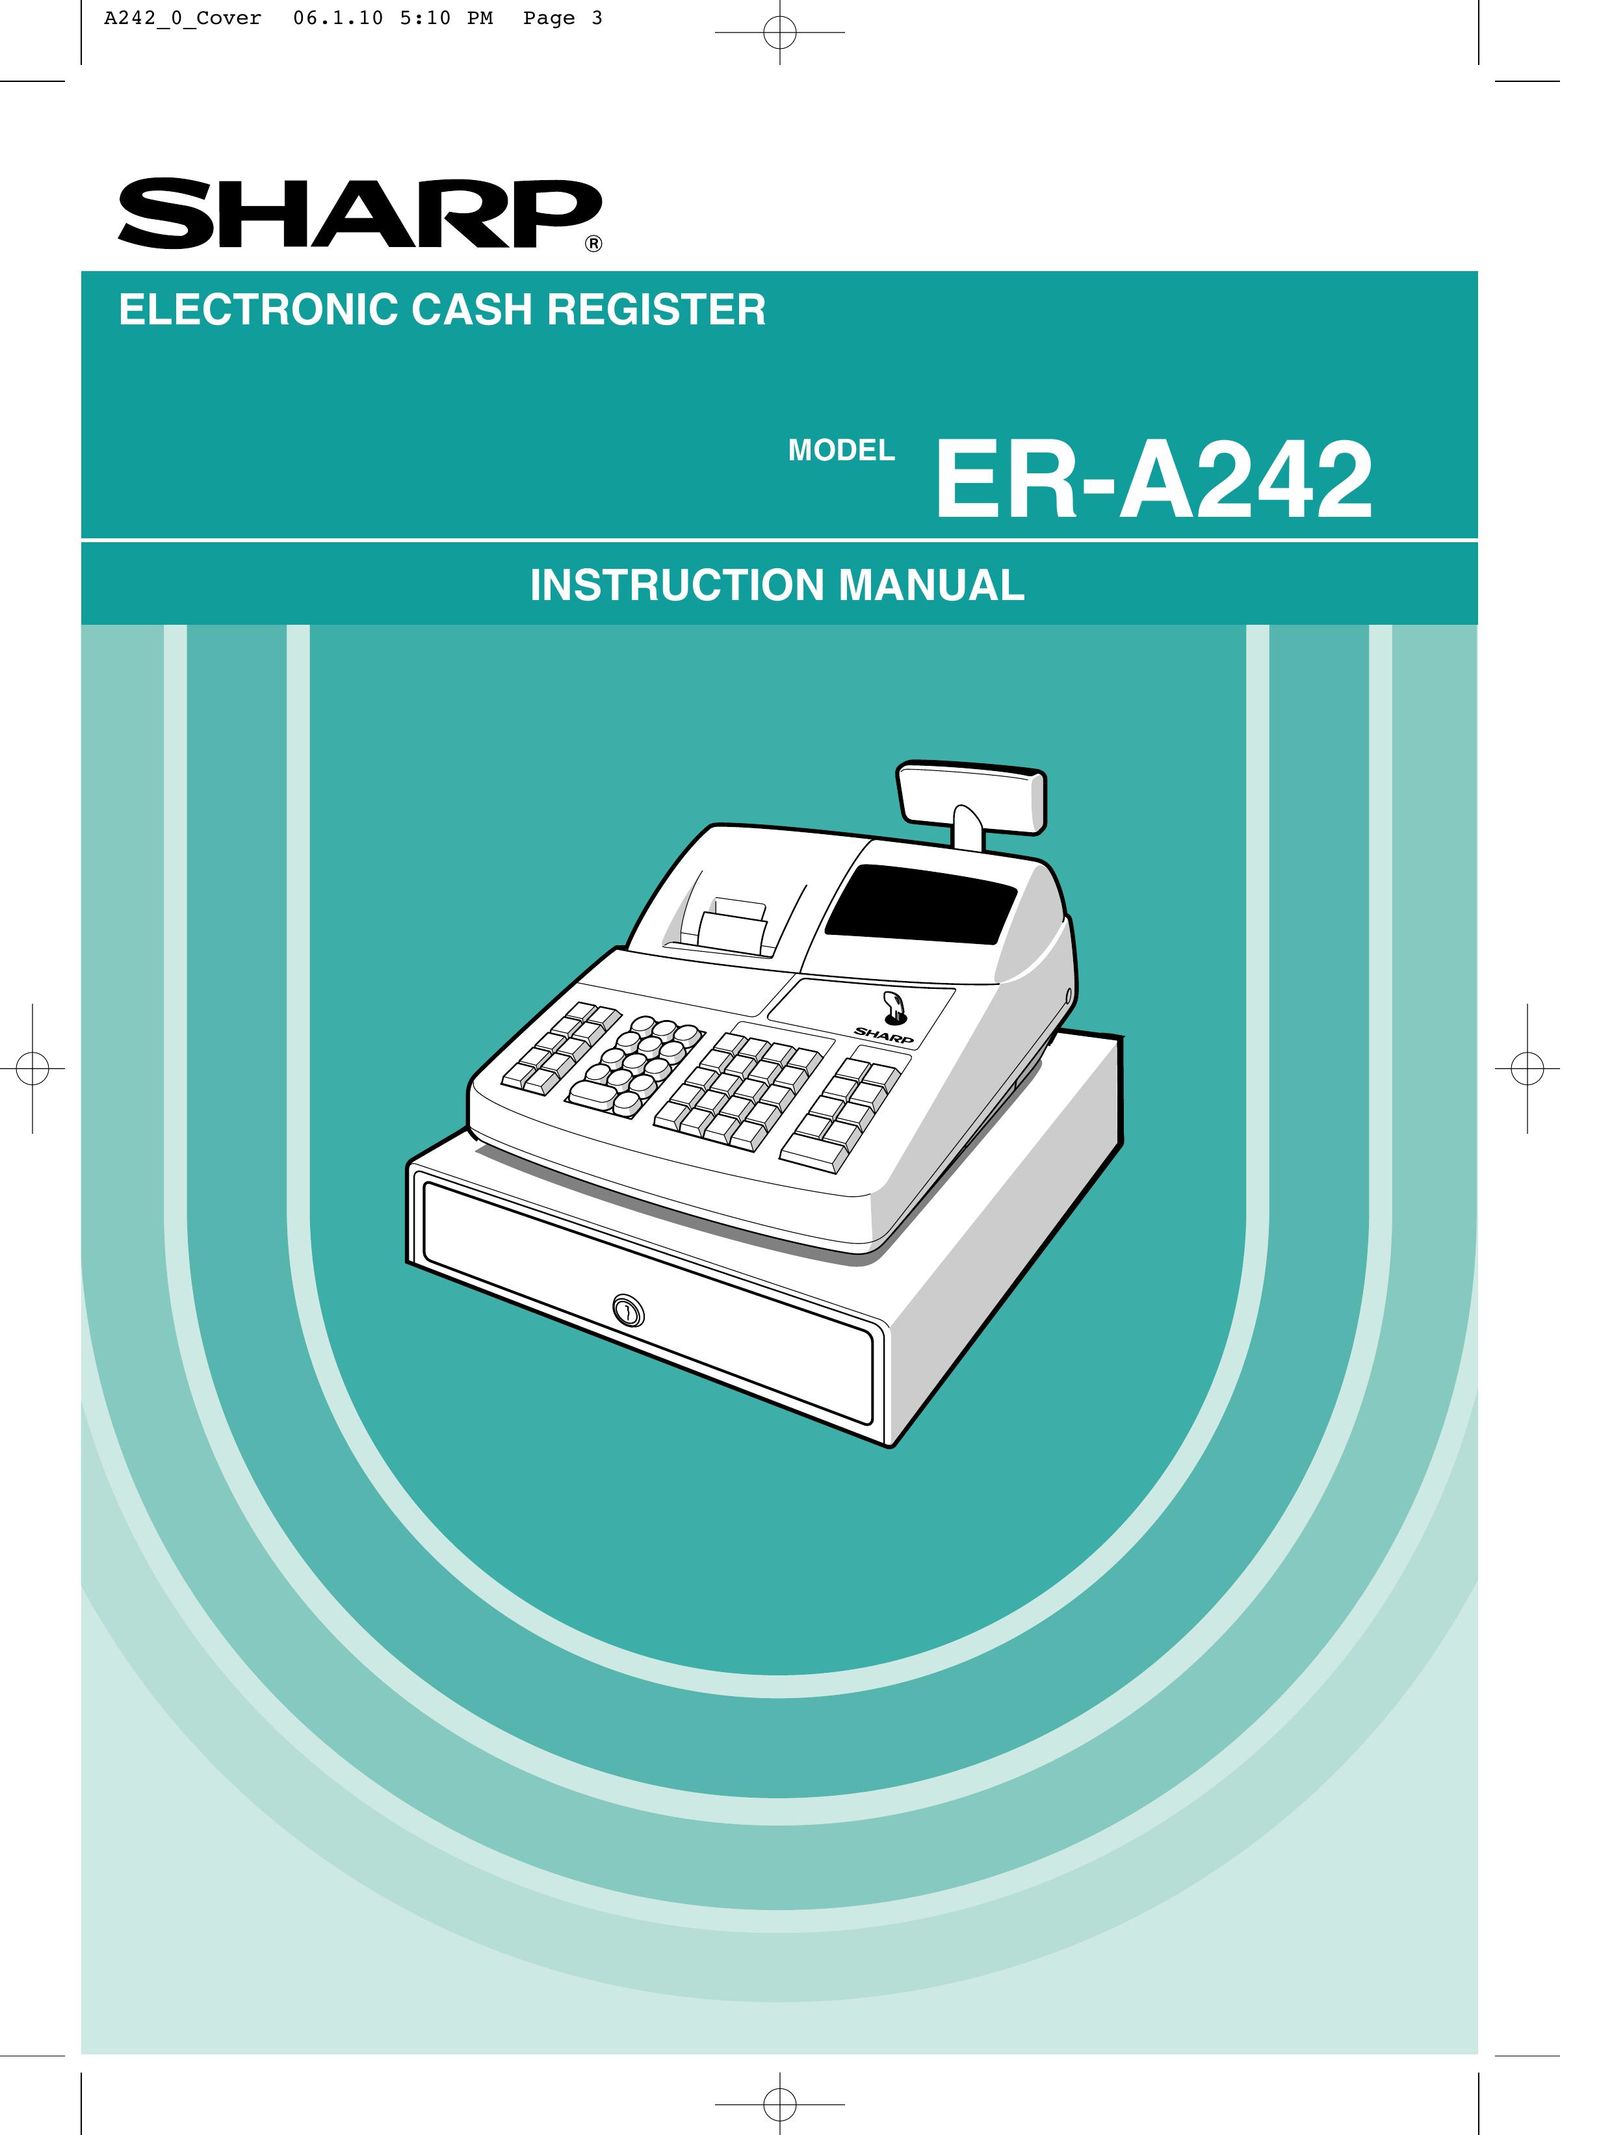 Sharp ER-A242 Cash Register User Manual